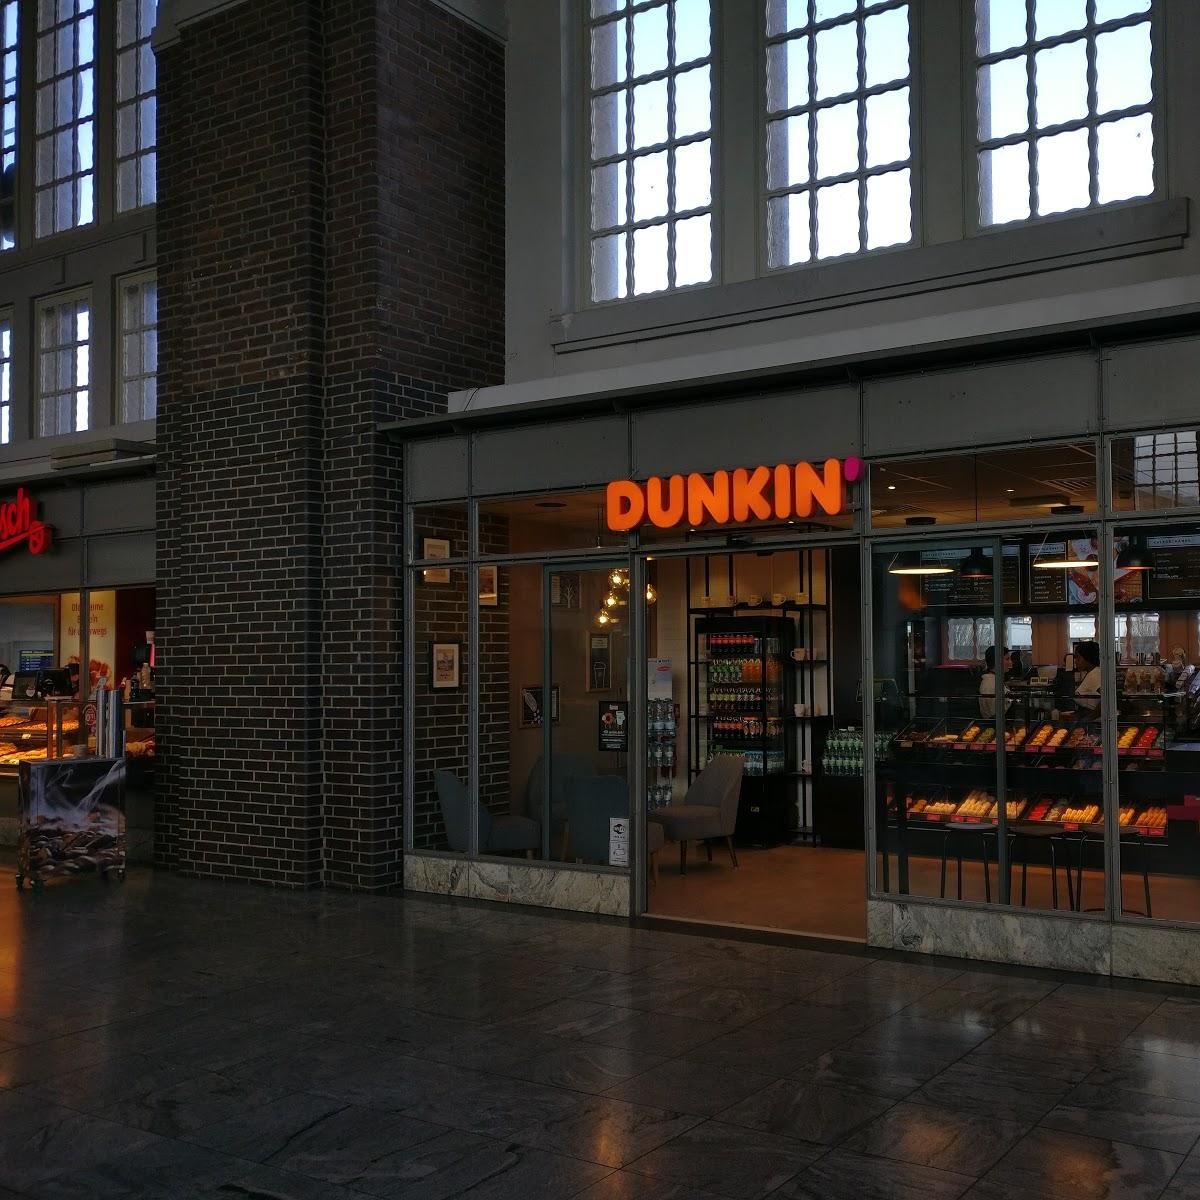 Restaurant "Dunkin